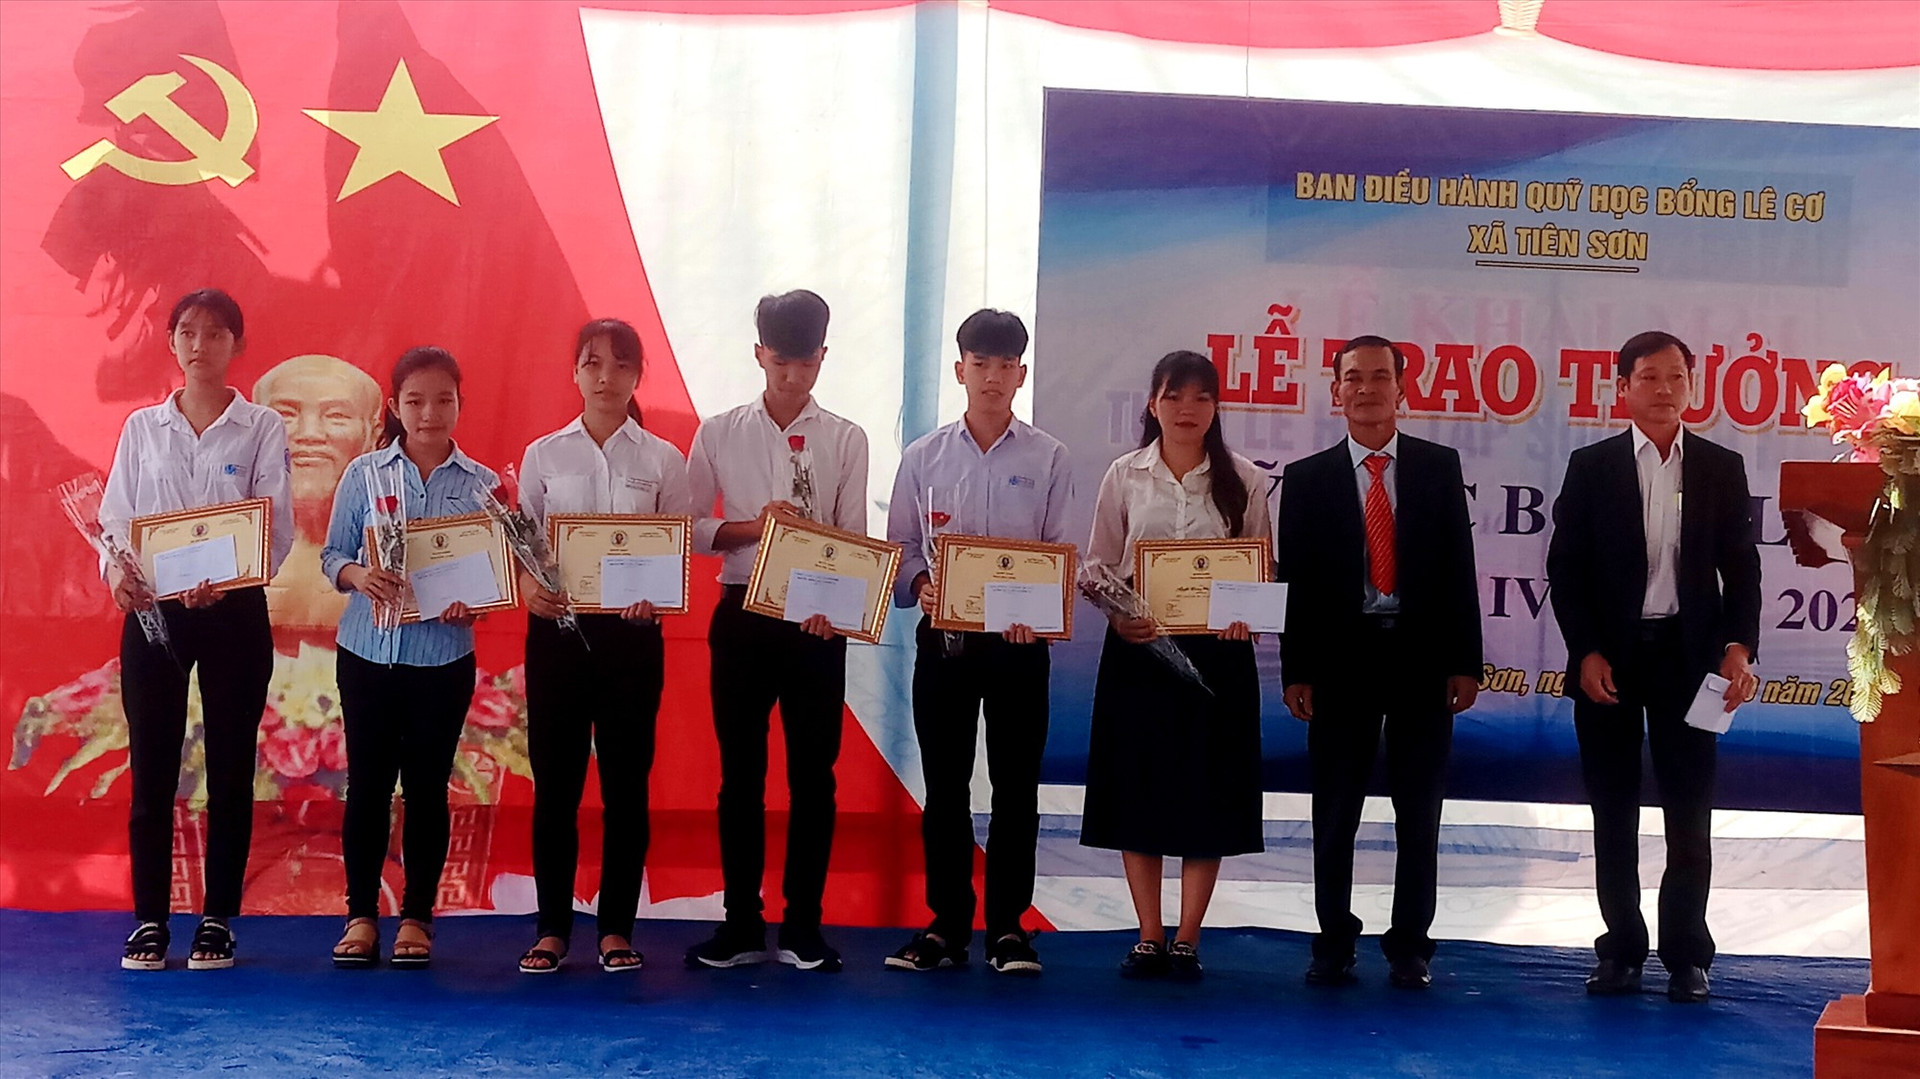 Trao thưởng Quỹ học bổng Lê Cơ cho 13 học sinh, sinh viên xã Tiên Sơn.